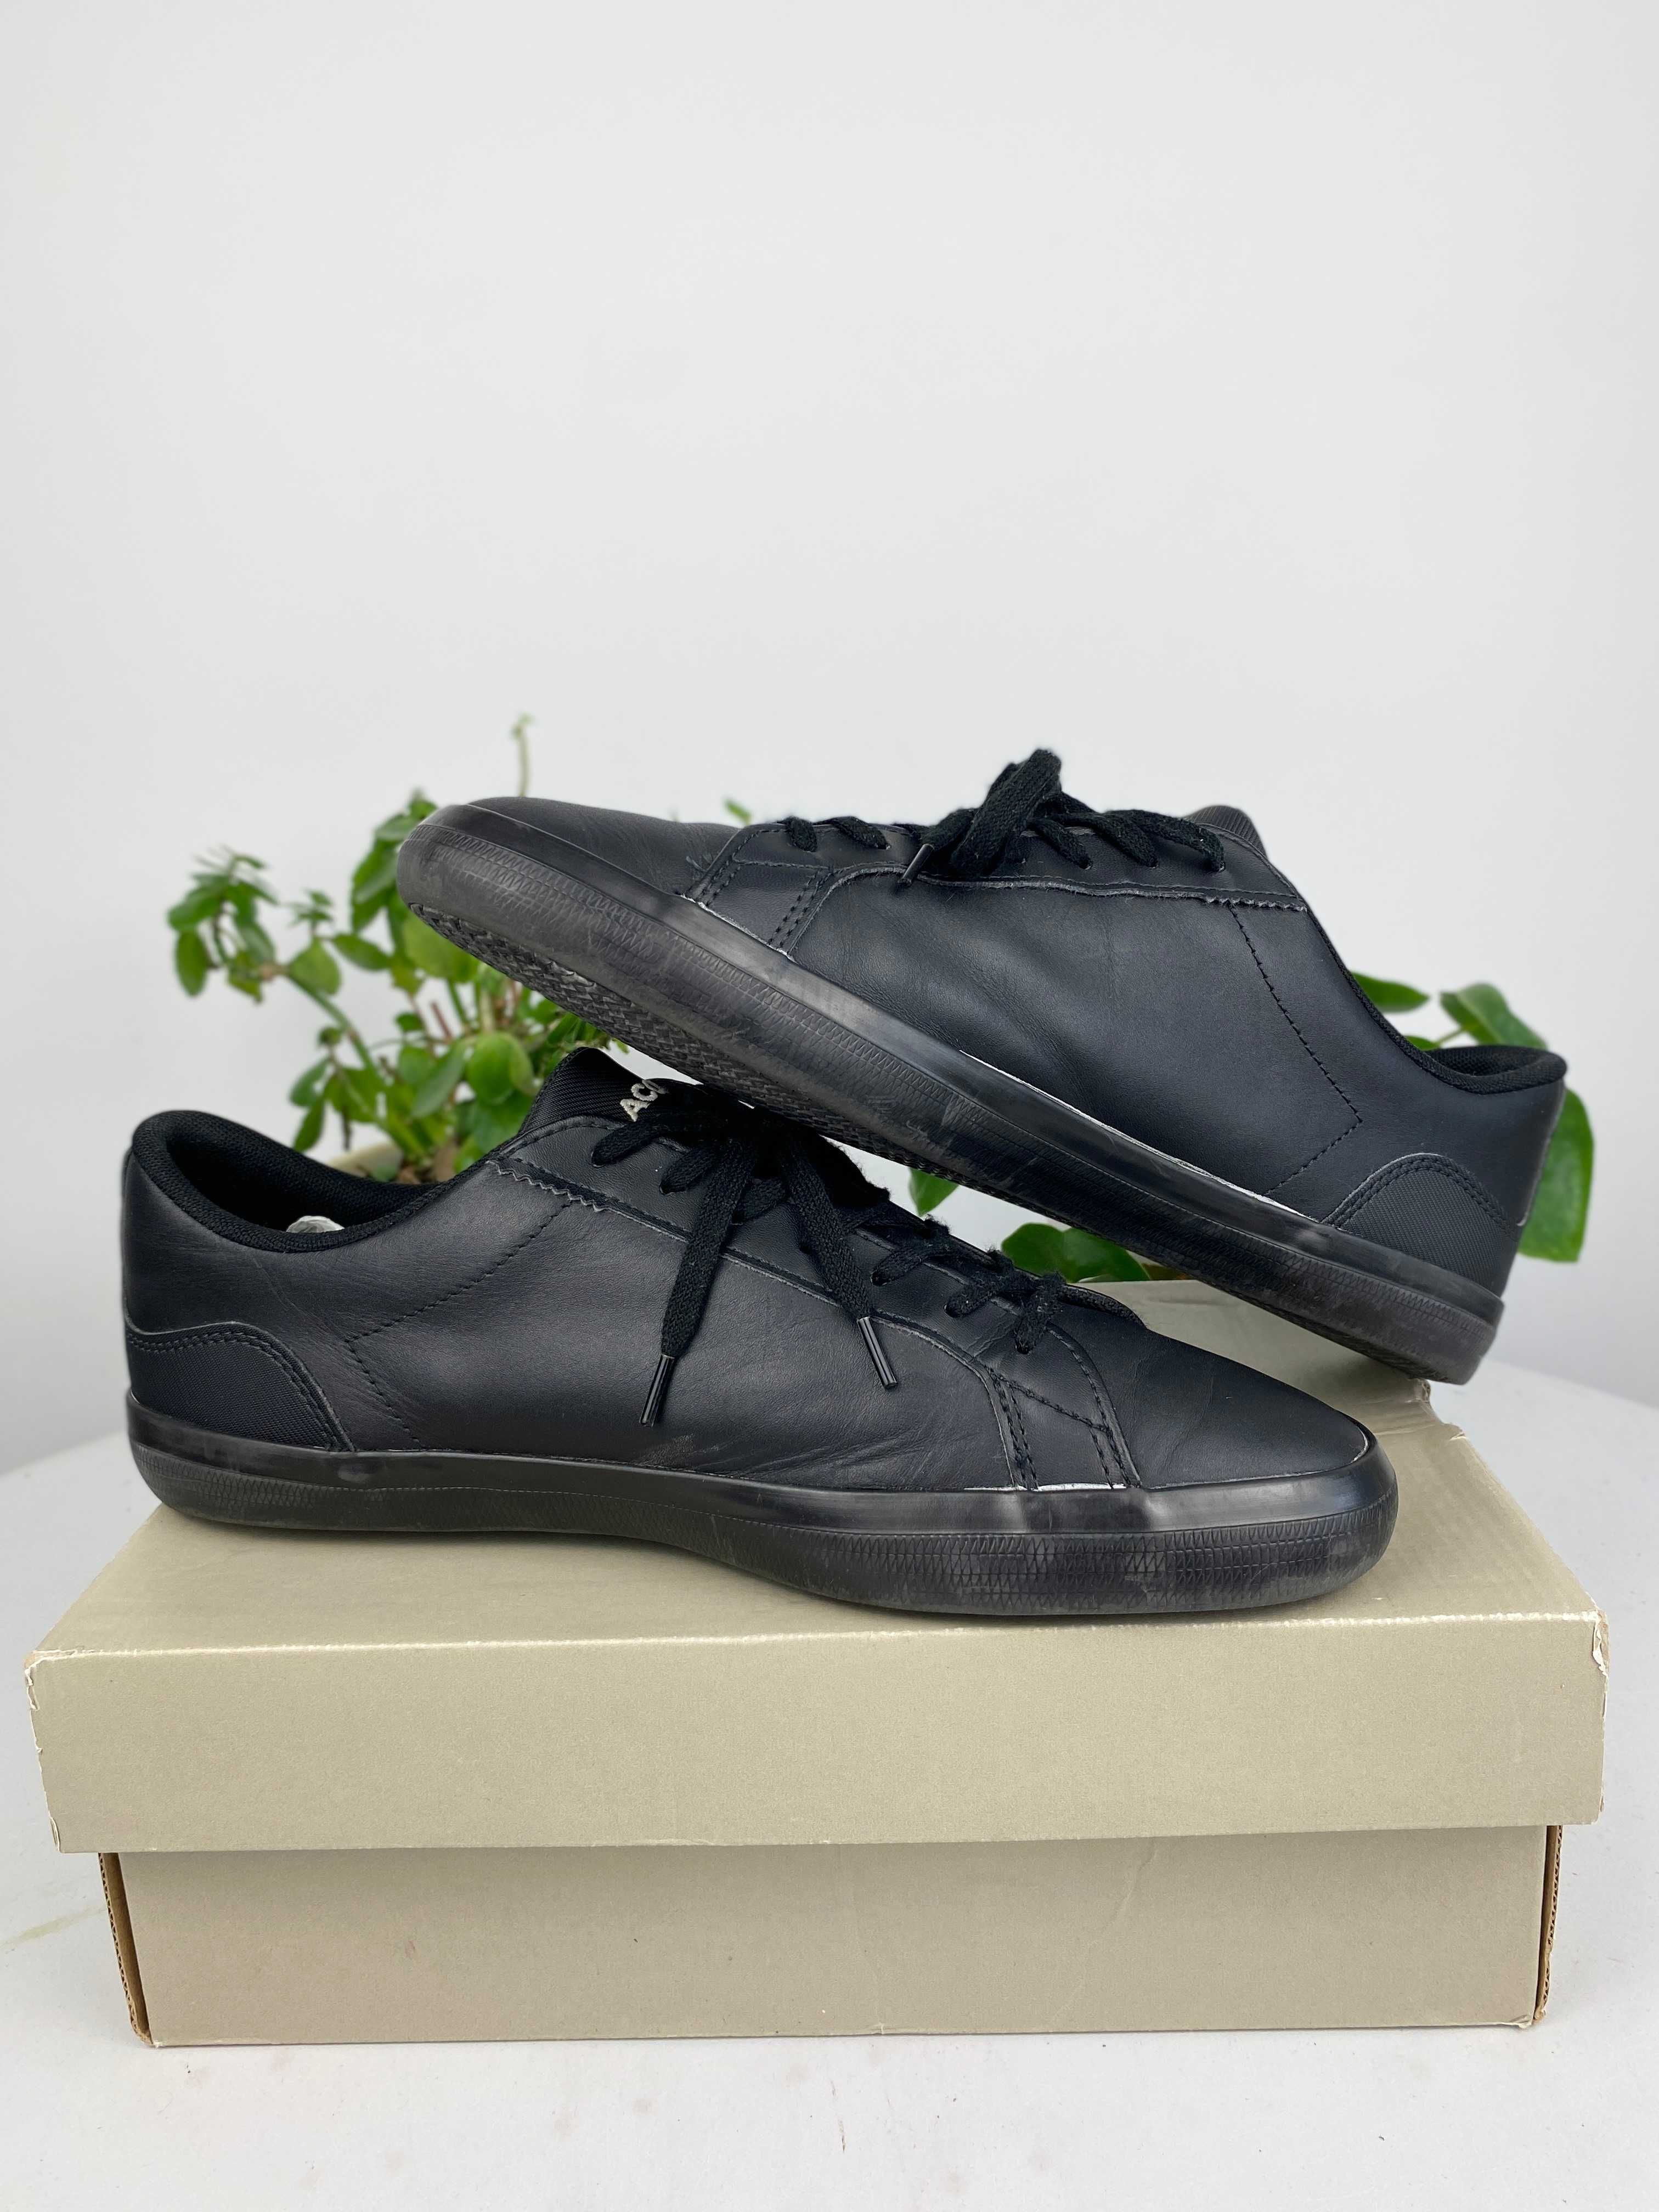 czarne buty sneakersy lacoste Lerond 0120 1 Cma r. 42 n155